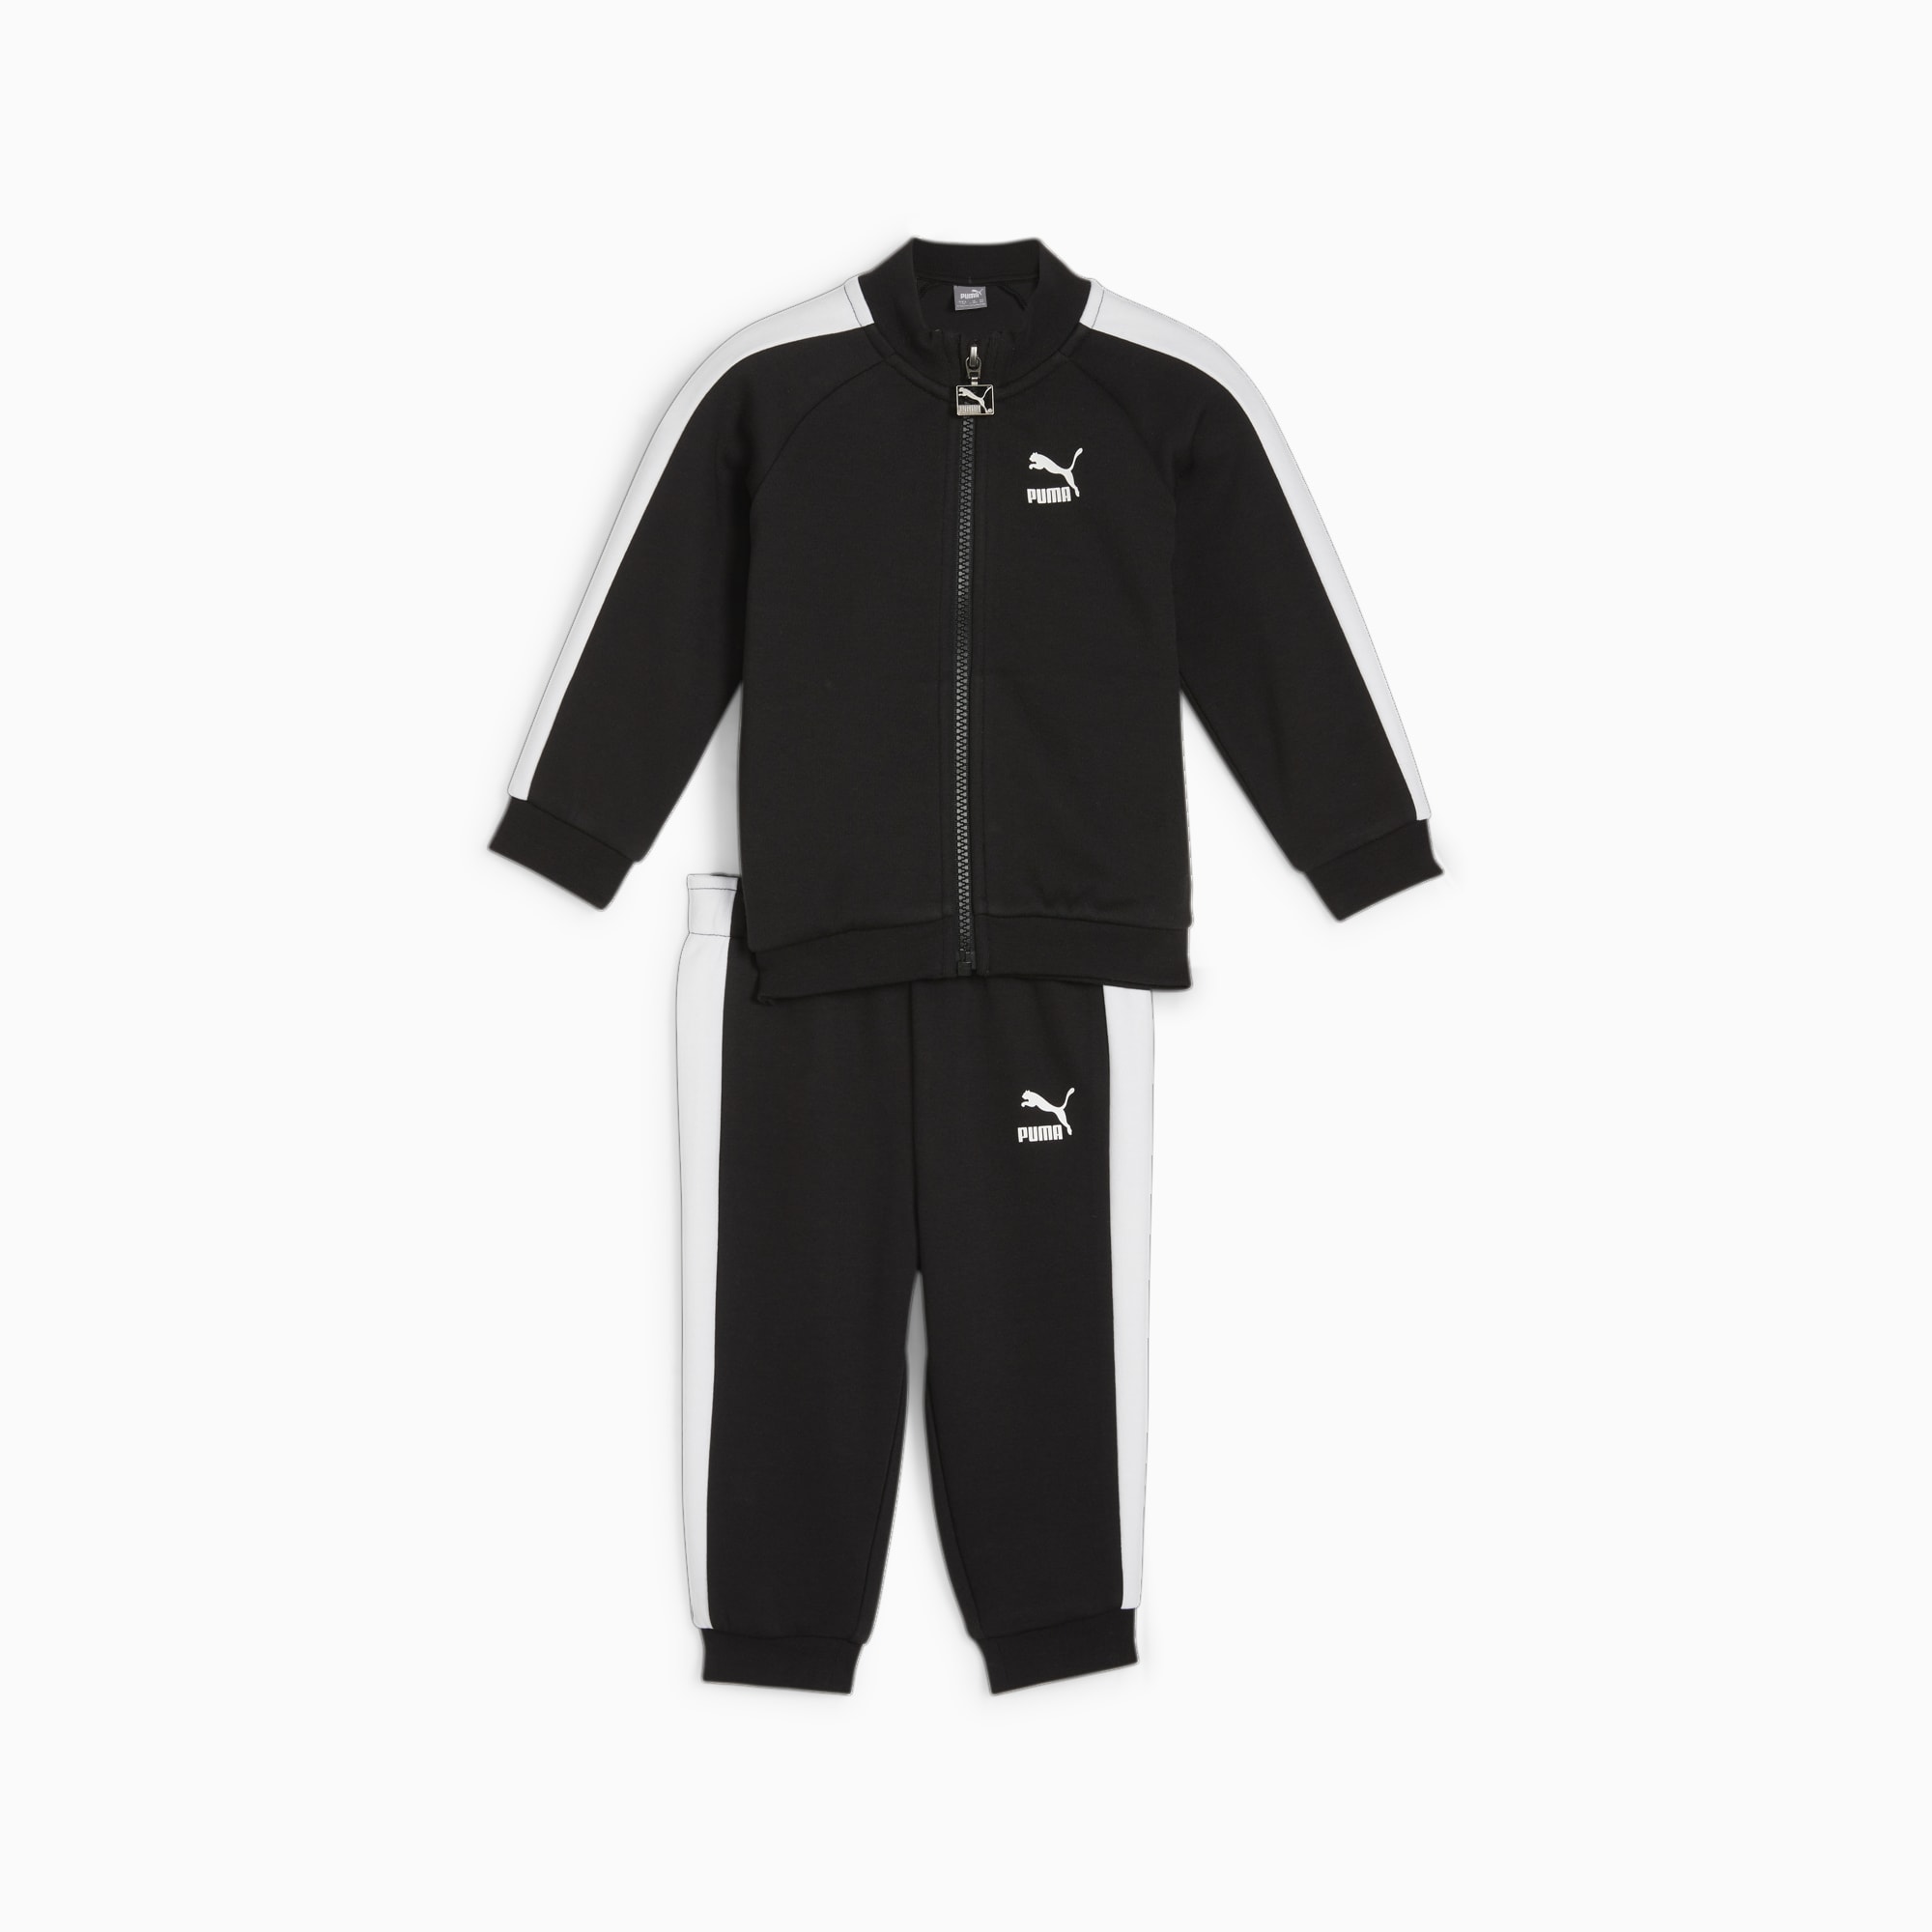 PUMA MINICATS T7 ICONIC Trainingsanzug Baby Für Kinder, Schwarz, Größe: 74, Kleidung